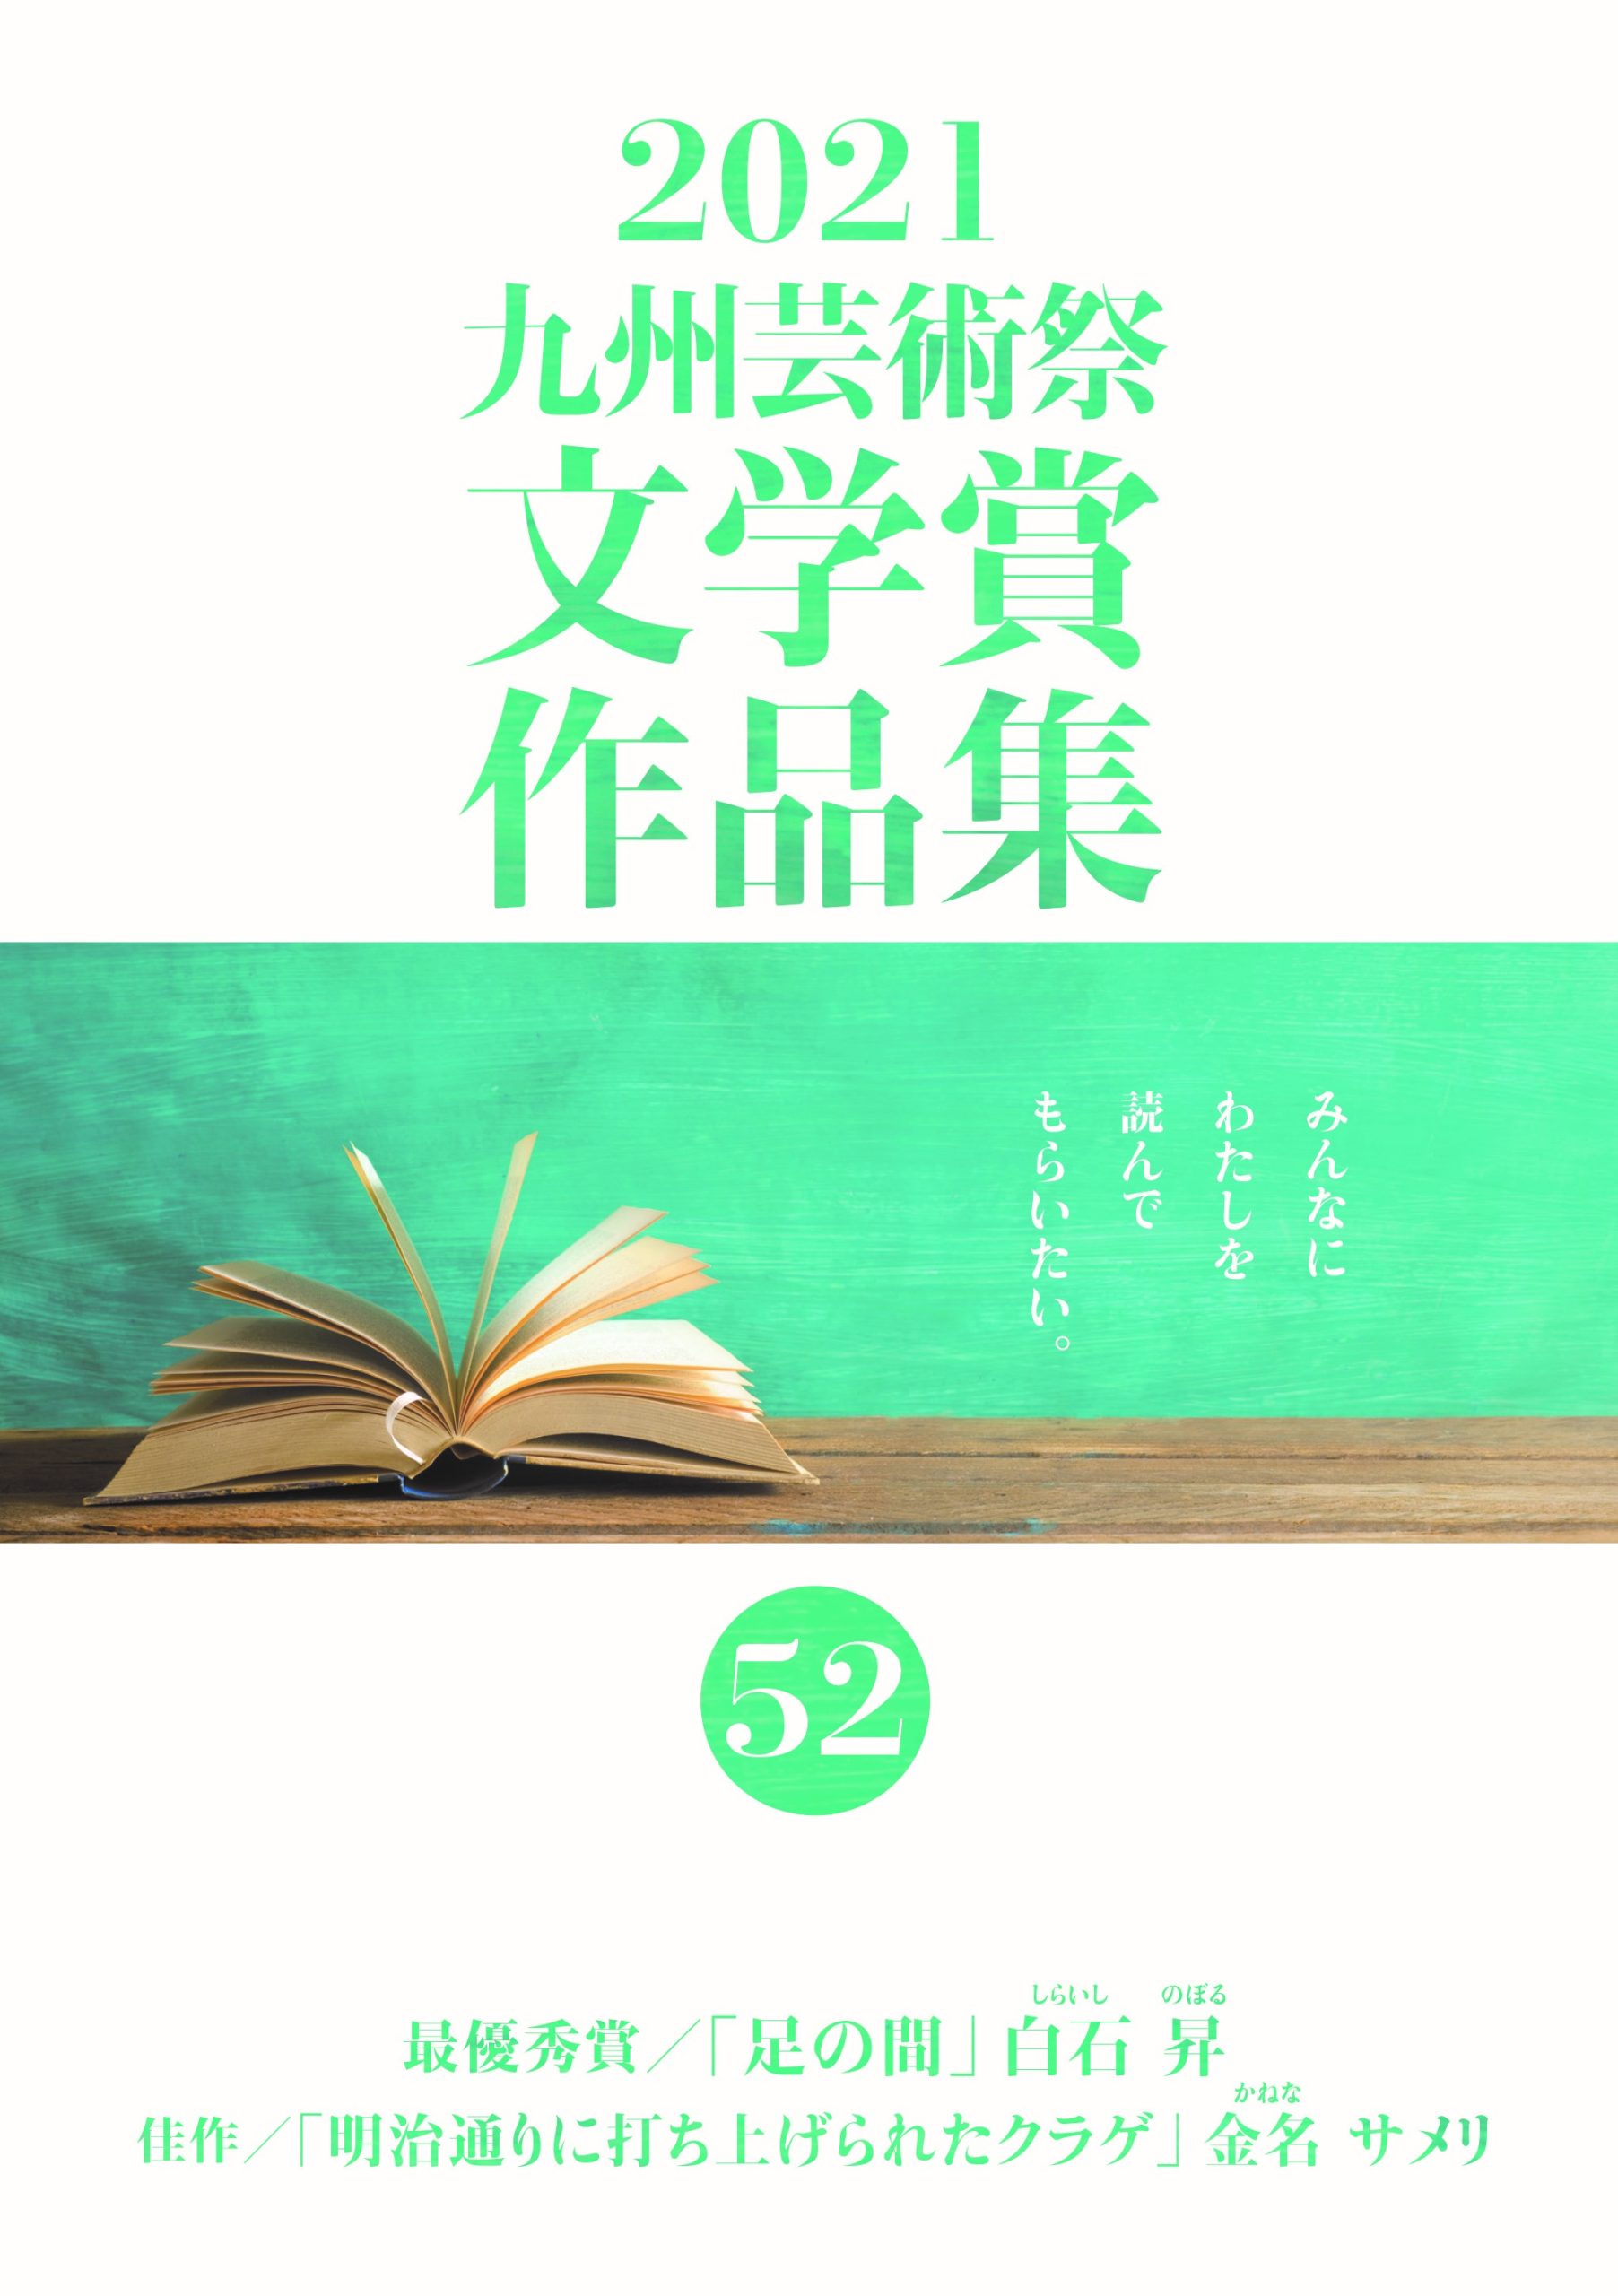 九州芸術祭 | 公益財団法人九州文化協会 | ページ 2